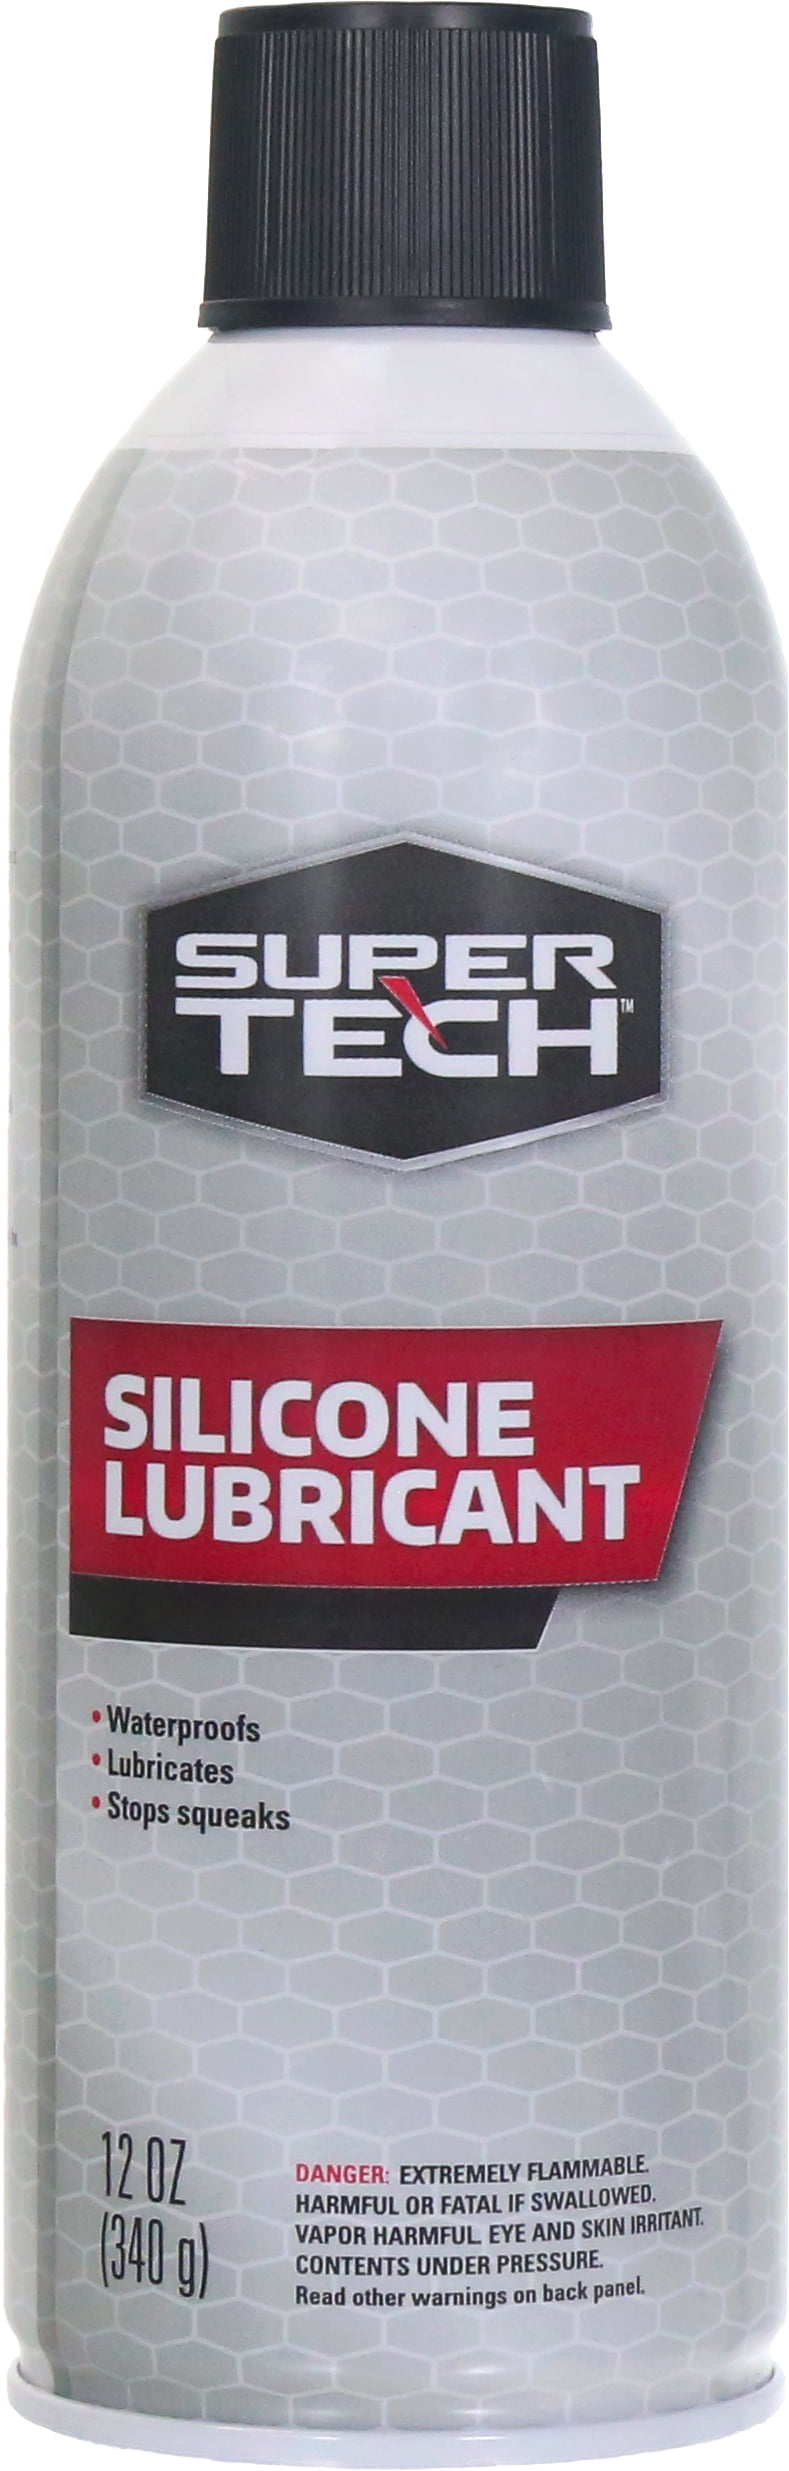 Super Tech Silicone Lubricant